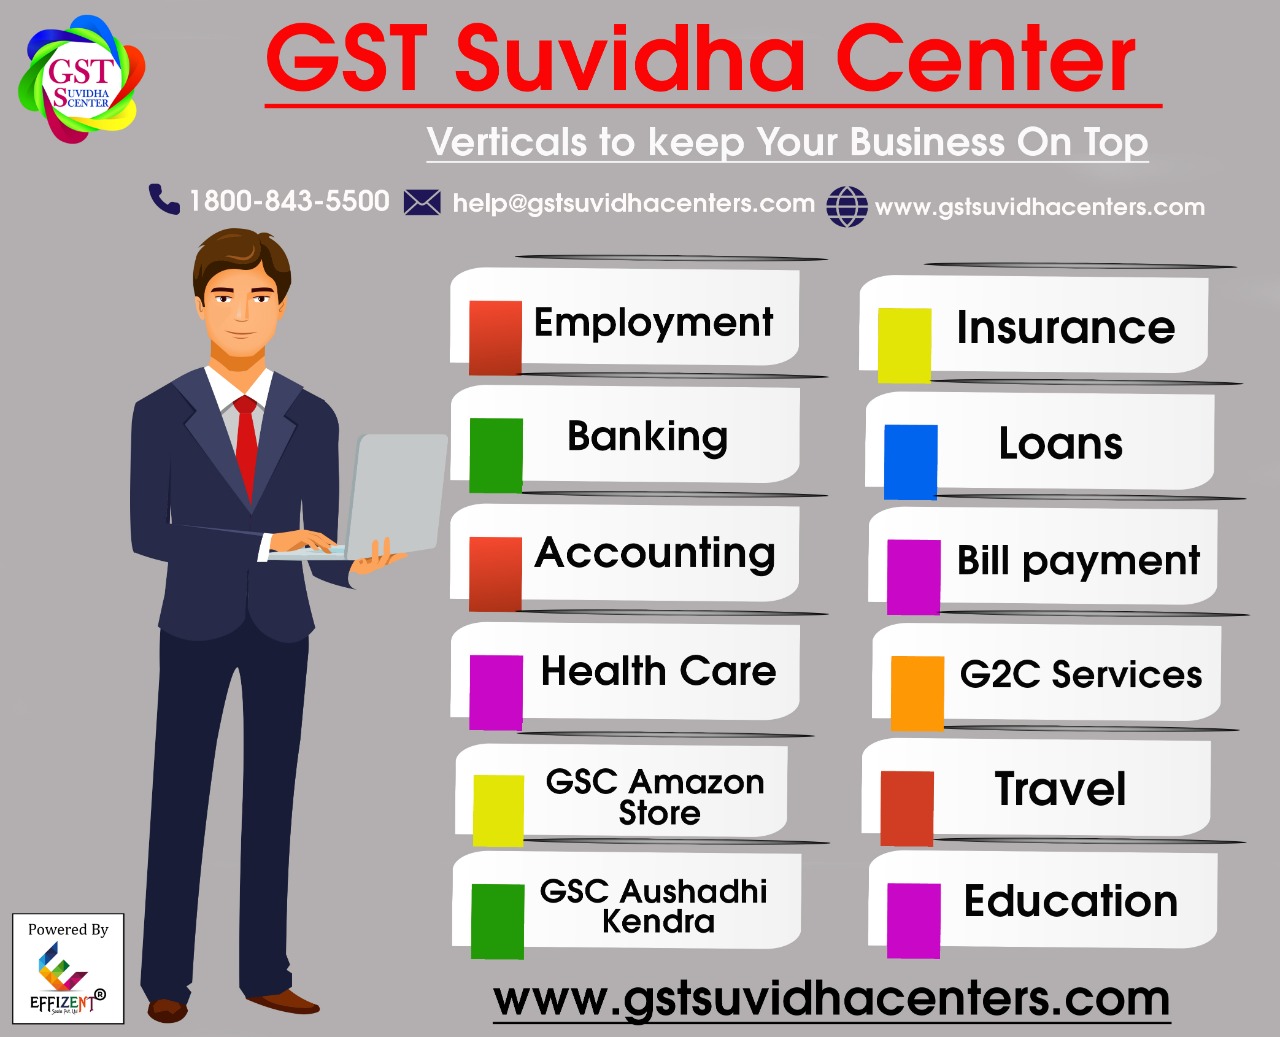 GST Suvidha Center Services List